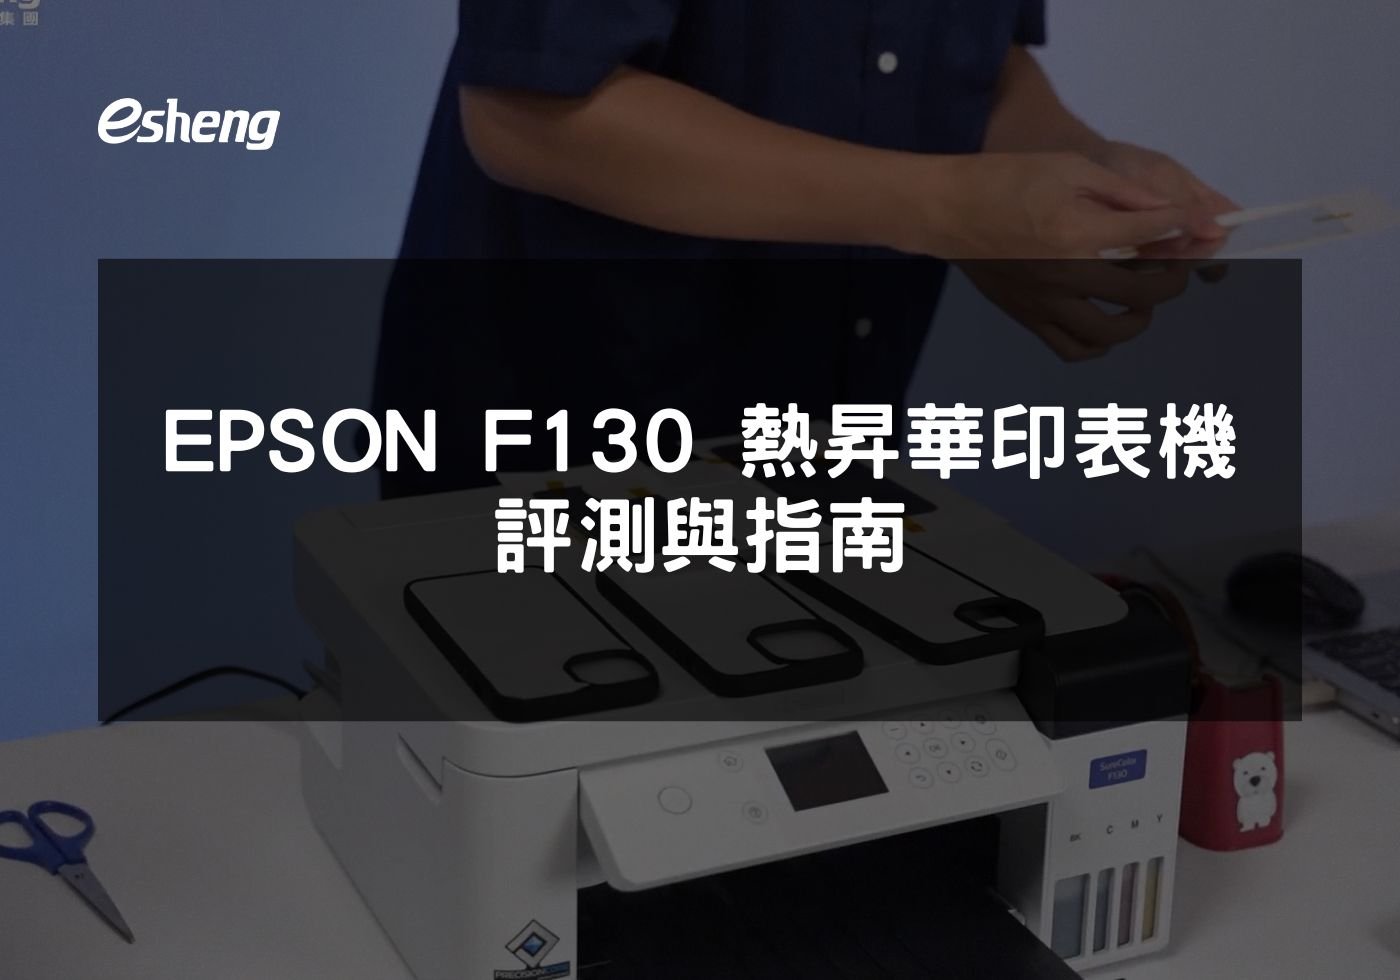 閱讀更多文章 EPSON F130 熱昇華印表機評測與指南